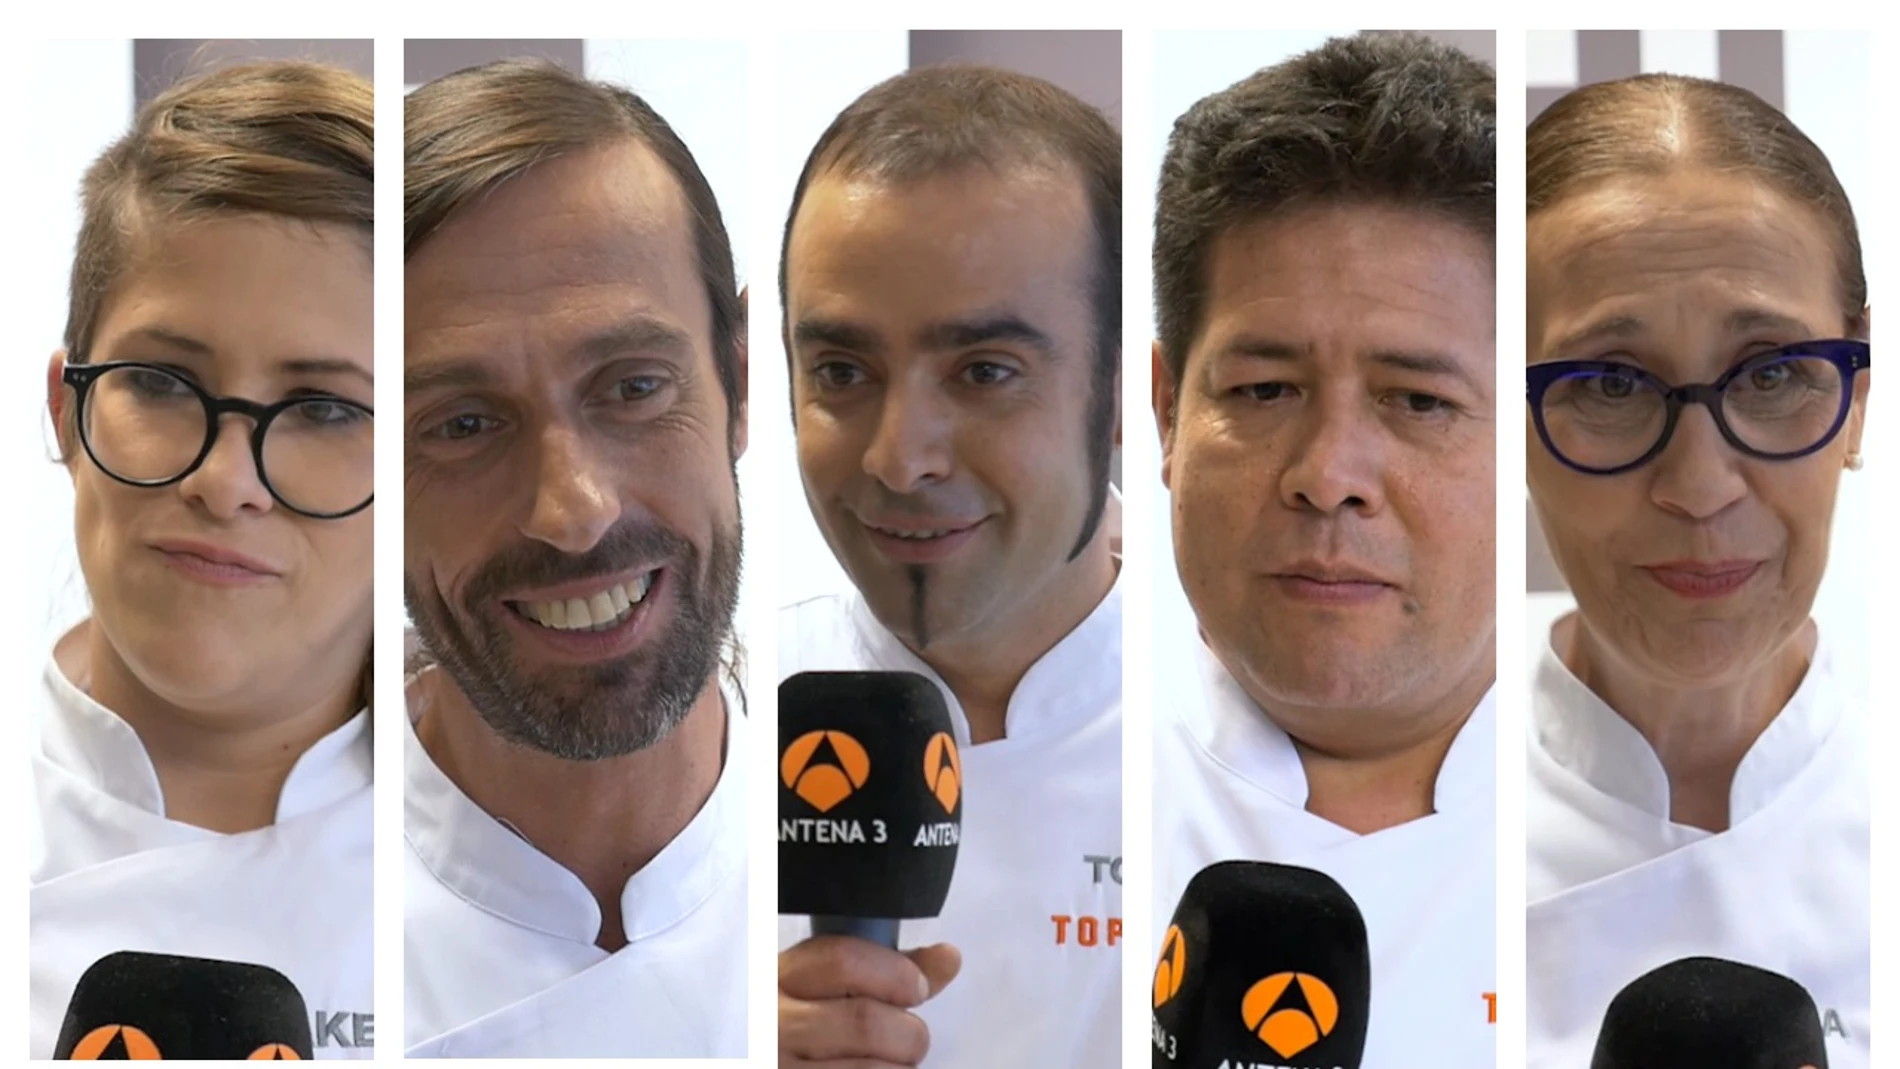 Los concursantes de 'Top Chef' definen el concurso con una sola palabra 